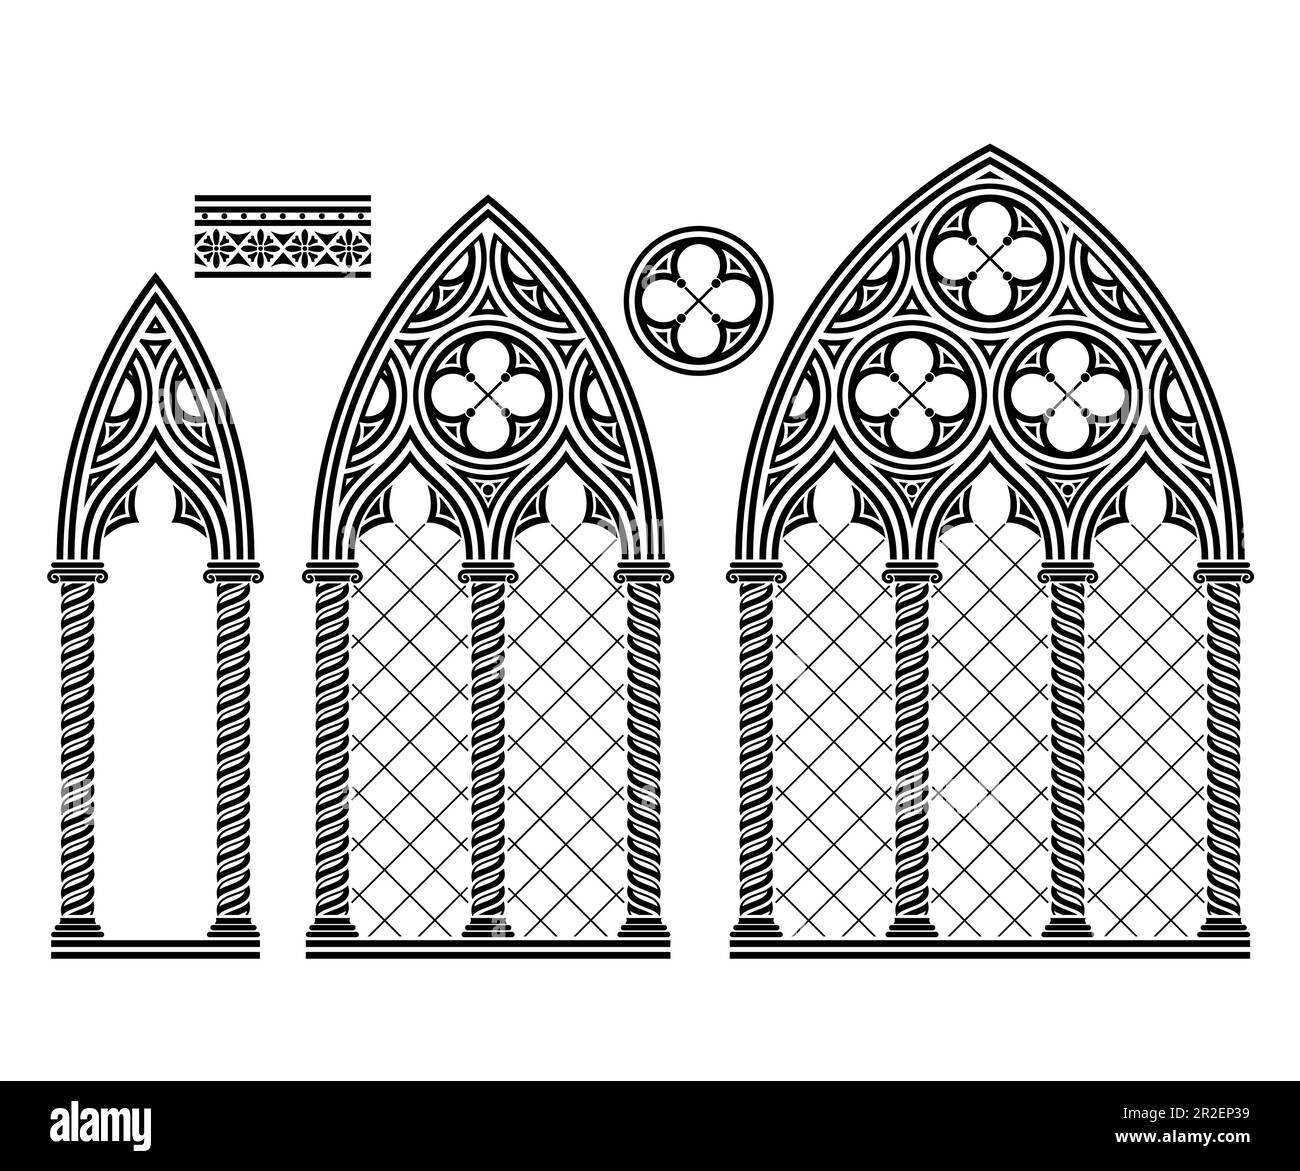 Mittelalterliche gotische Buntglaskathedrale mit Fenstern Stock Vektor